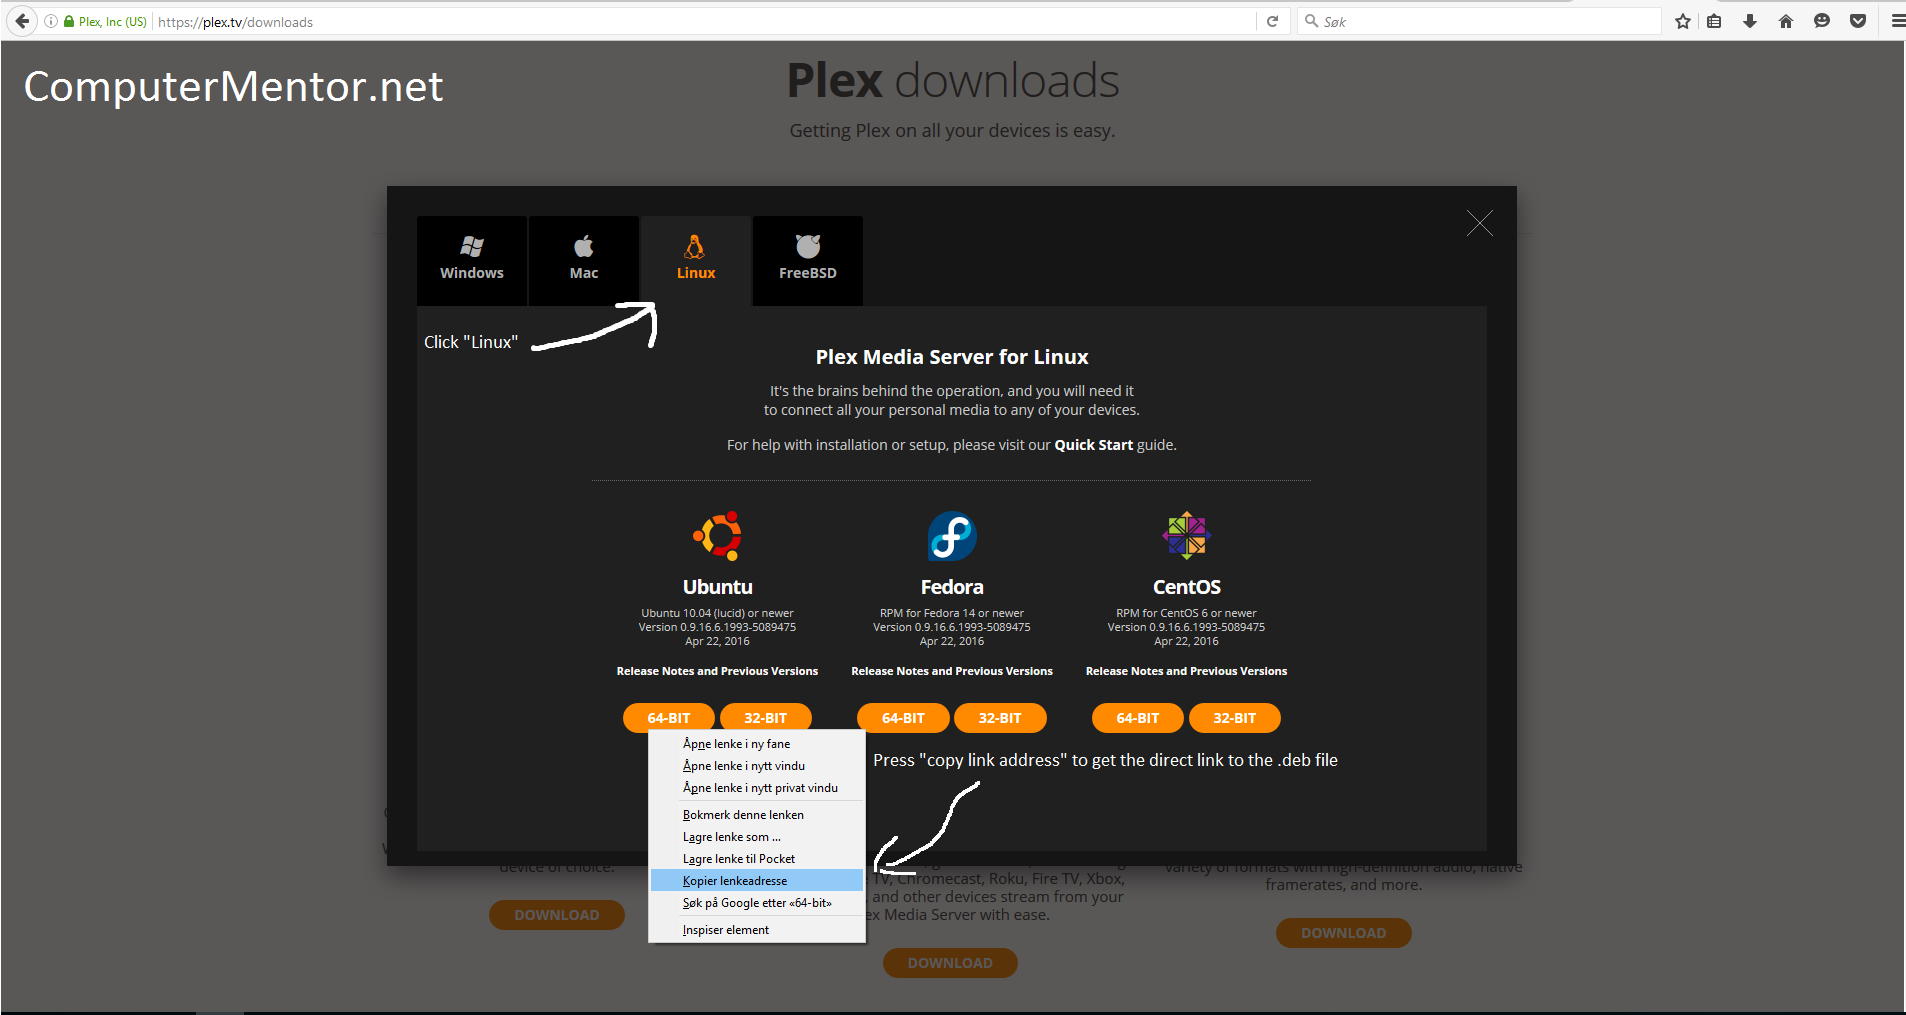 plex media server setup guide